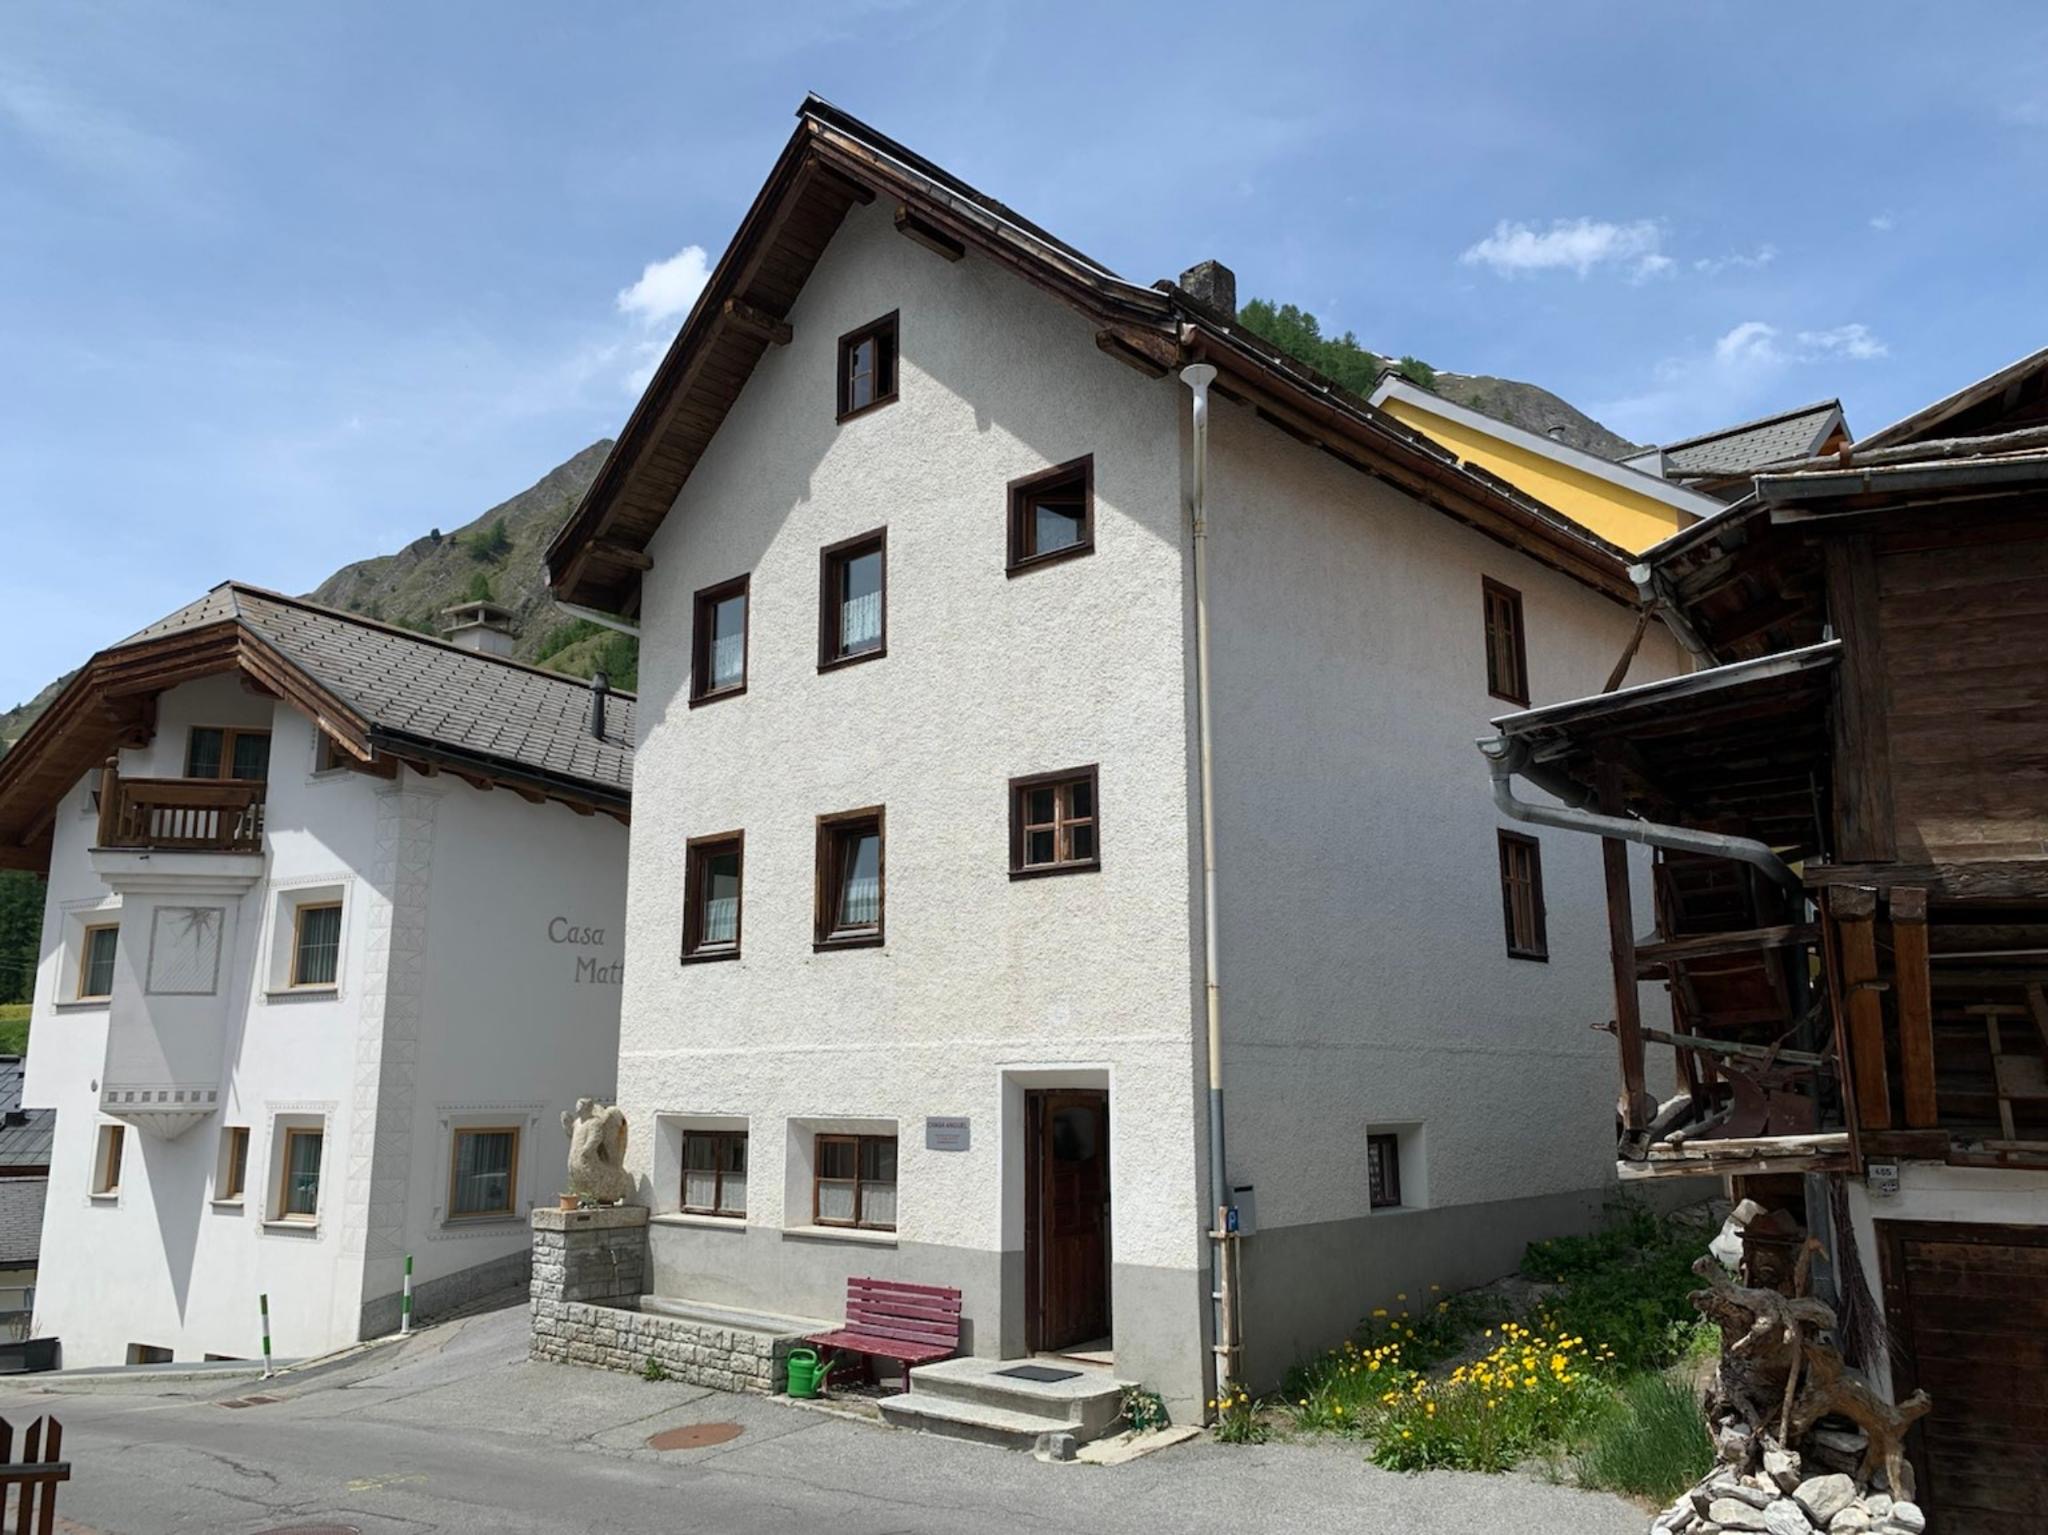 Ferienhaus Chasa Anguel Nr. 1, (Samnaun-Ravaisch). Ferienwohnung in der Schweiz